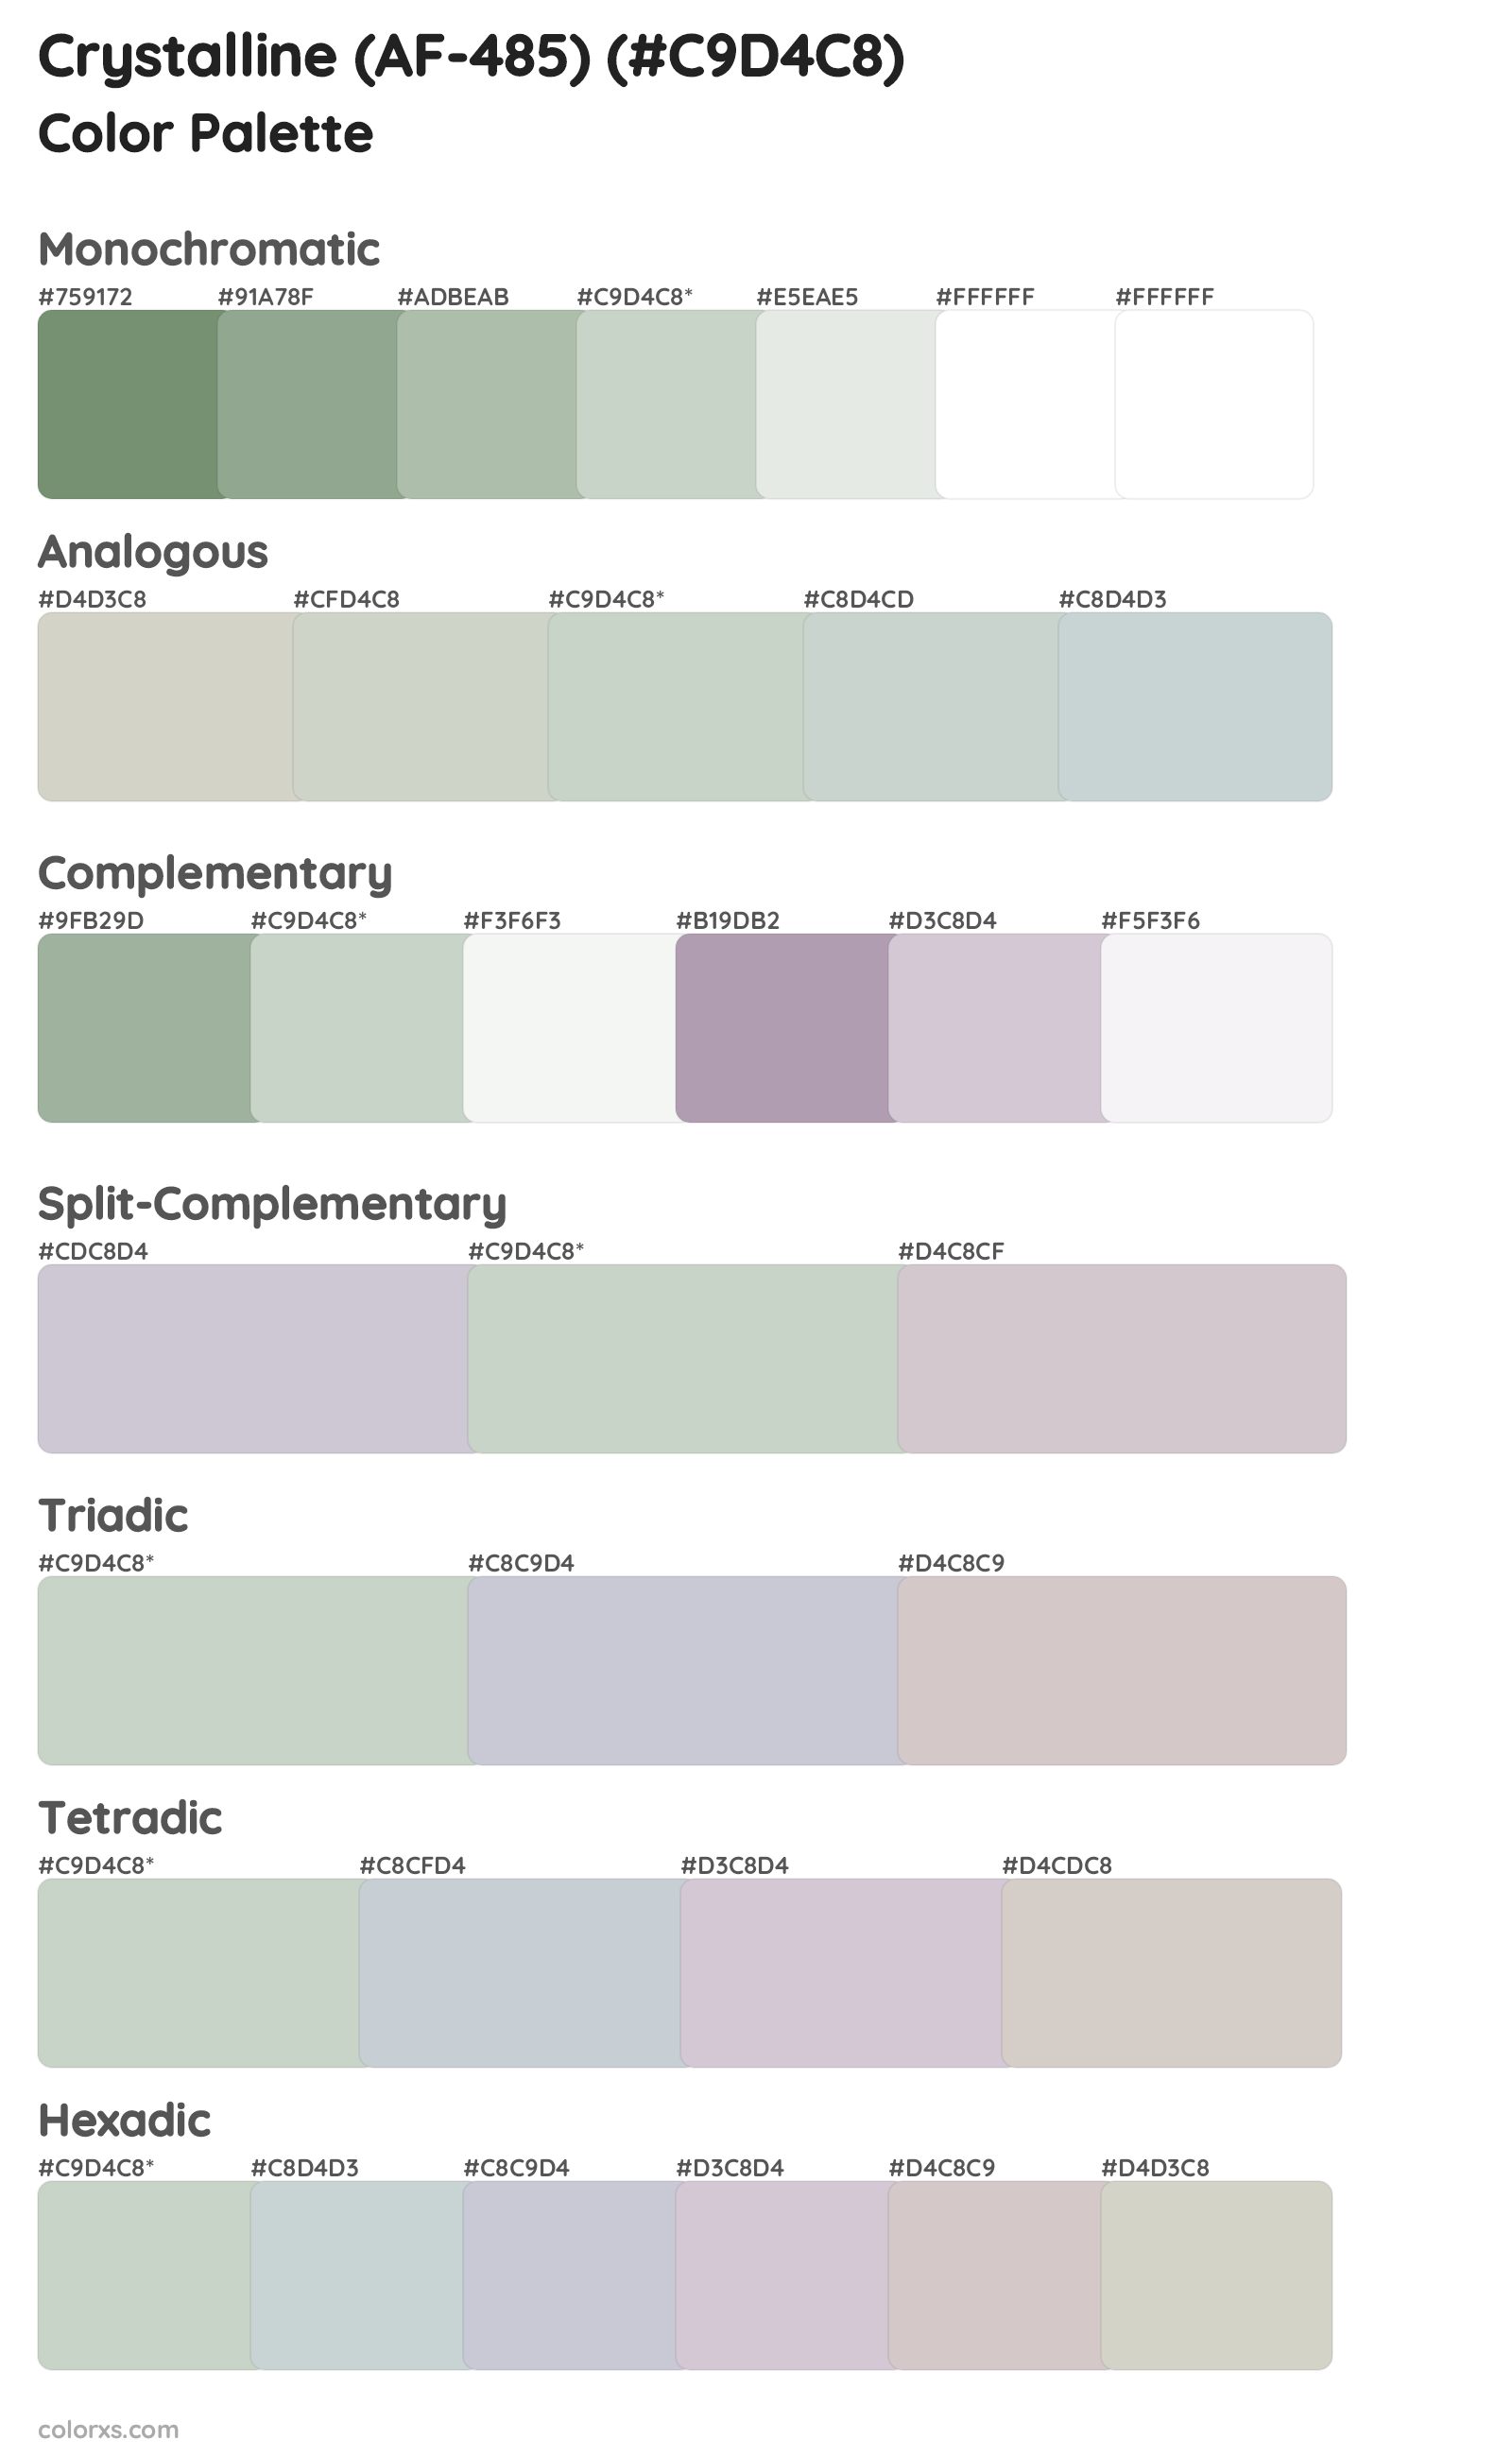 Crystalline (AF-485) Color Scheme Palettes